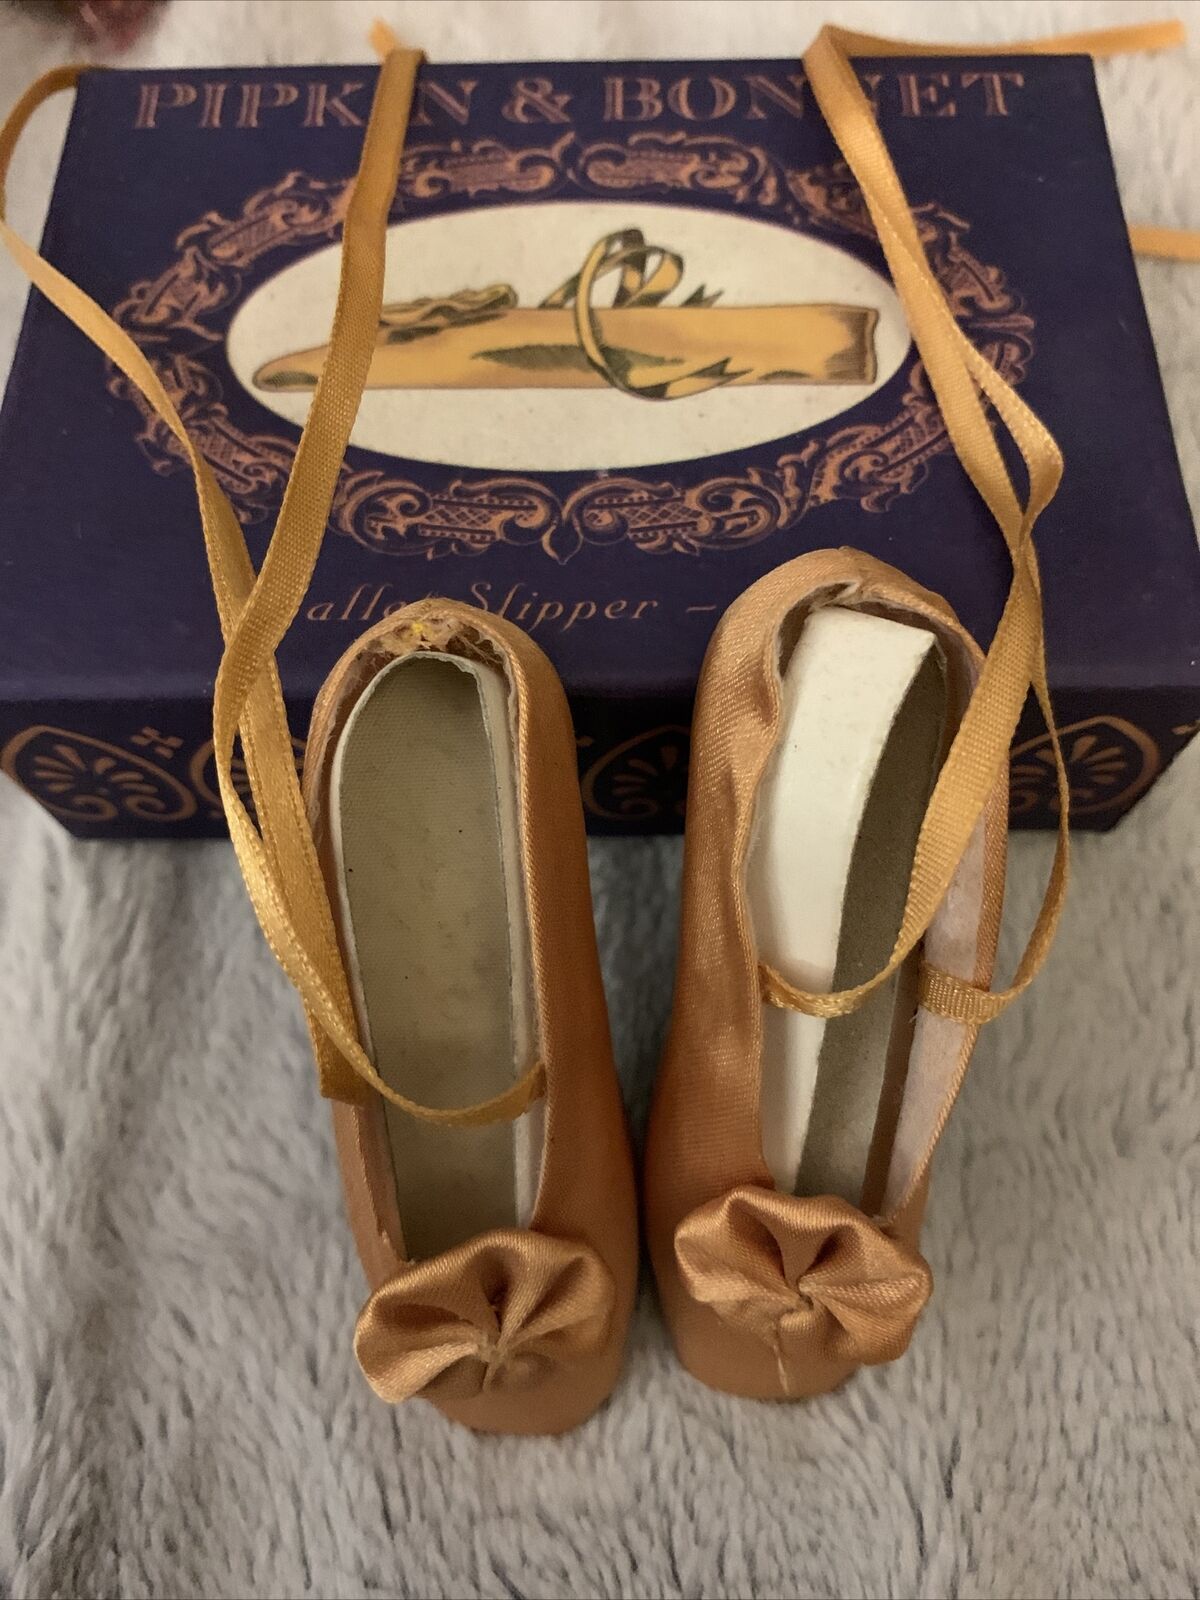 Pipkin & Bonnet Ballet Slippers 1830 in Box ￼